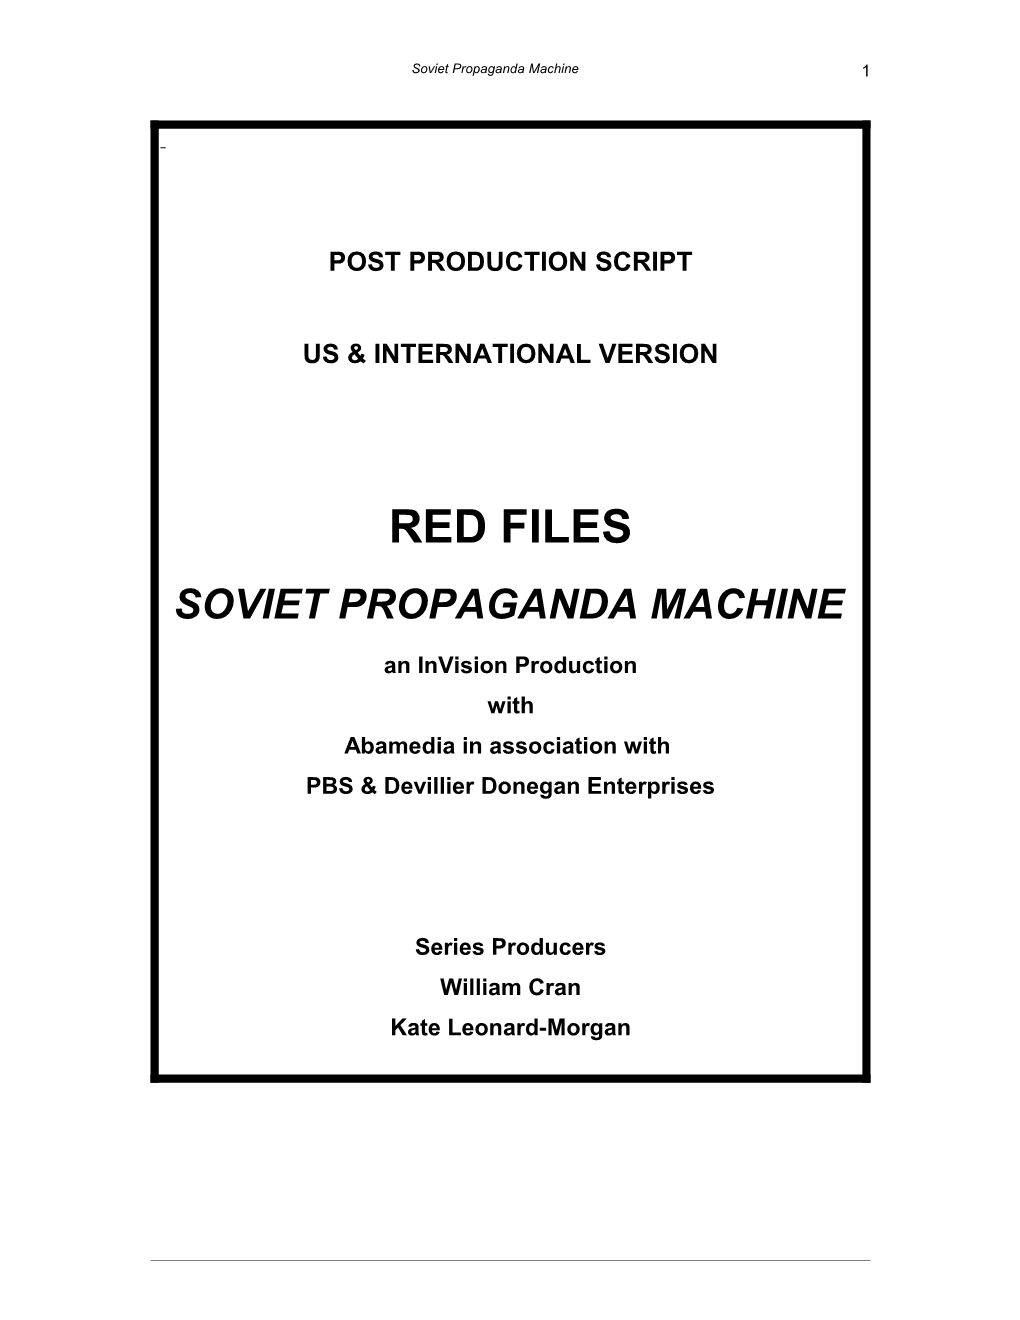 Post Production Script